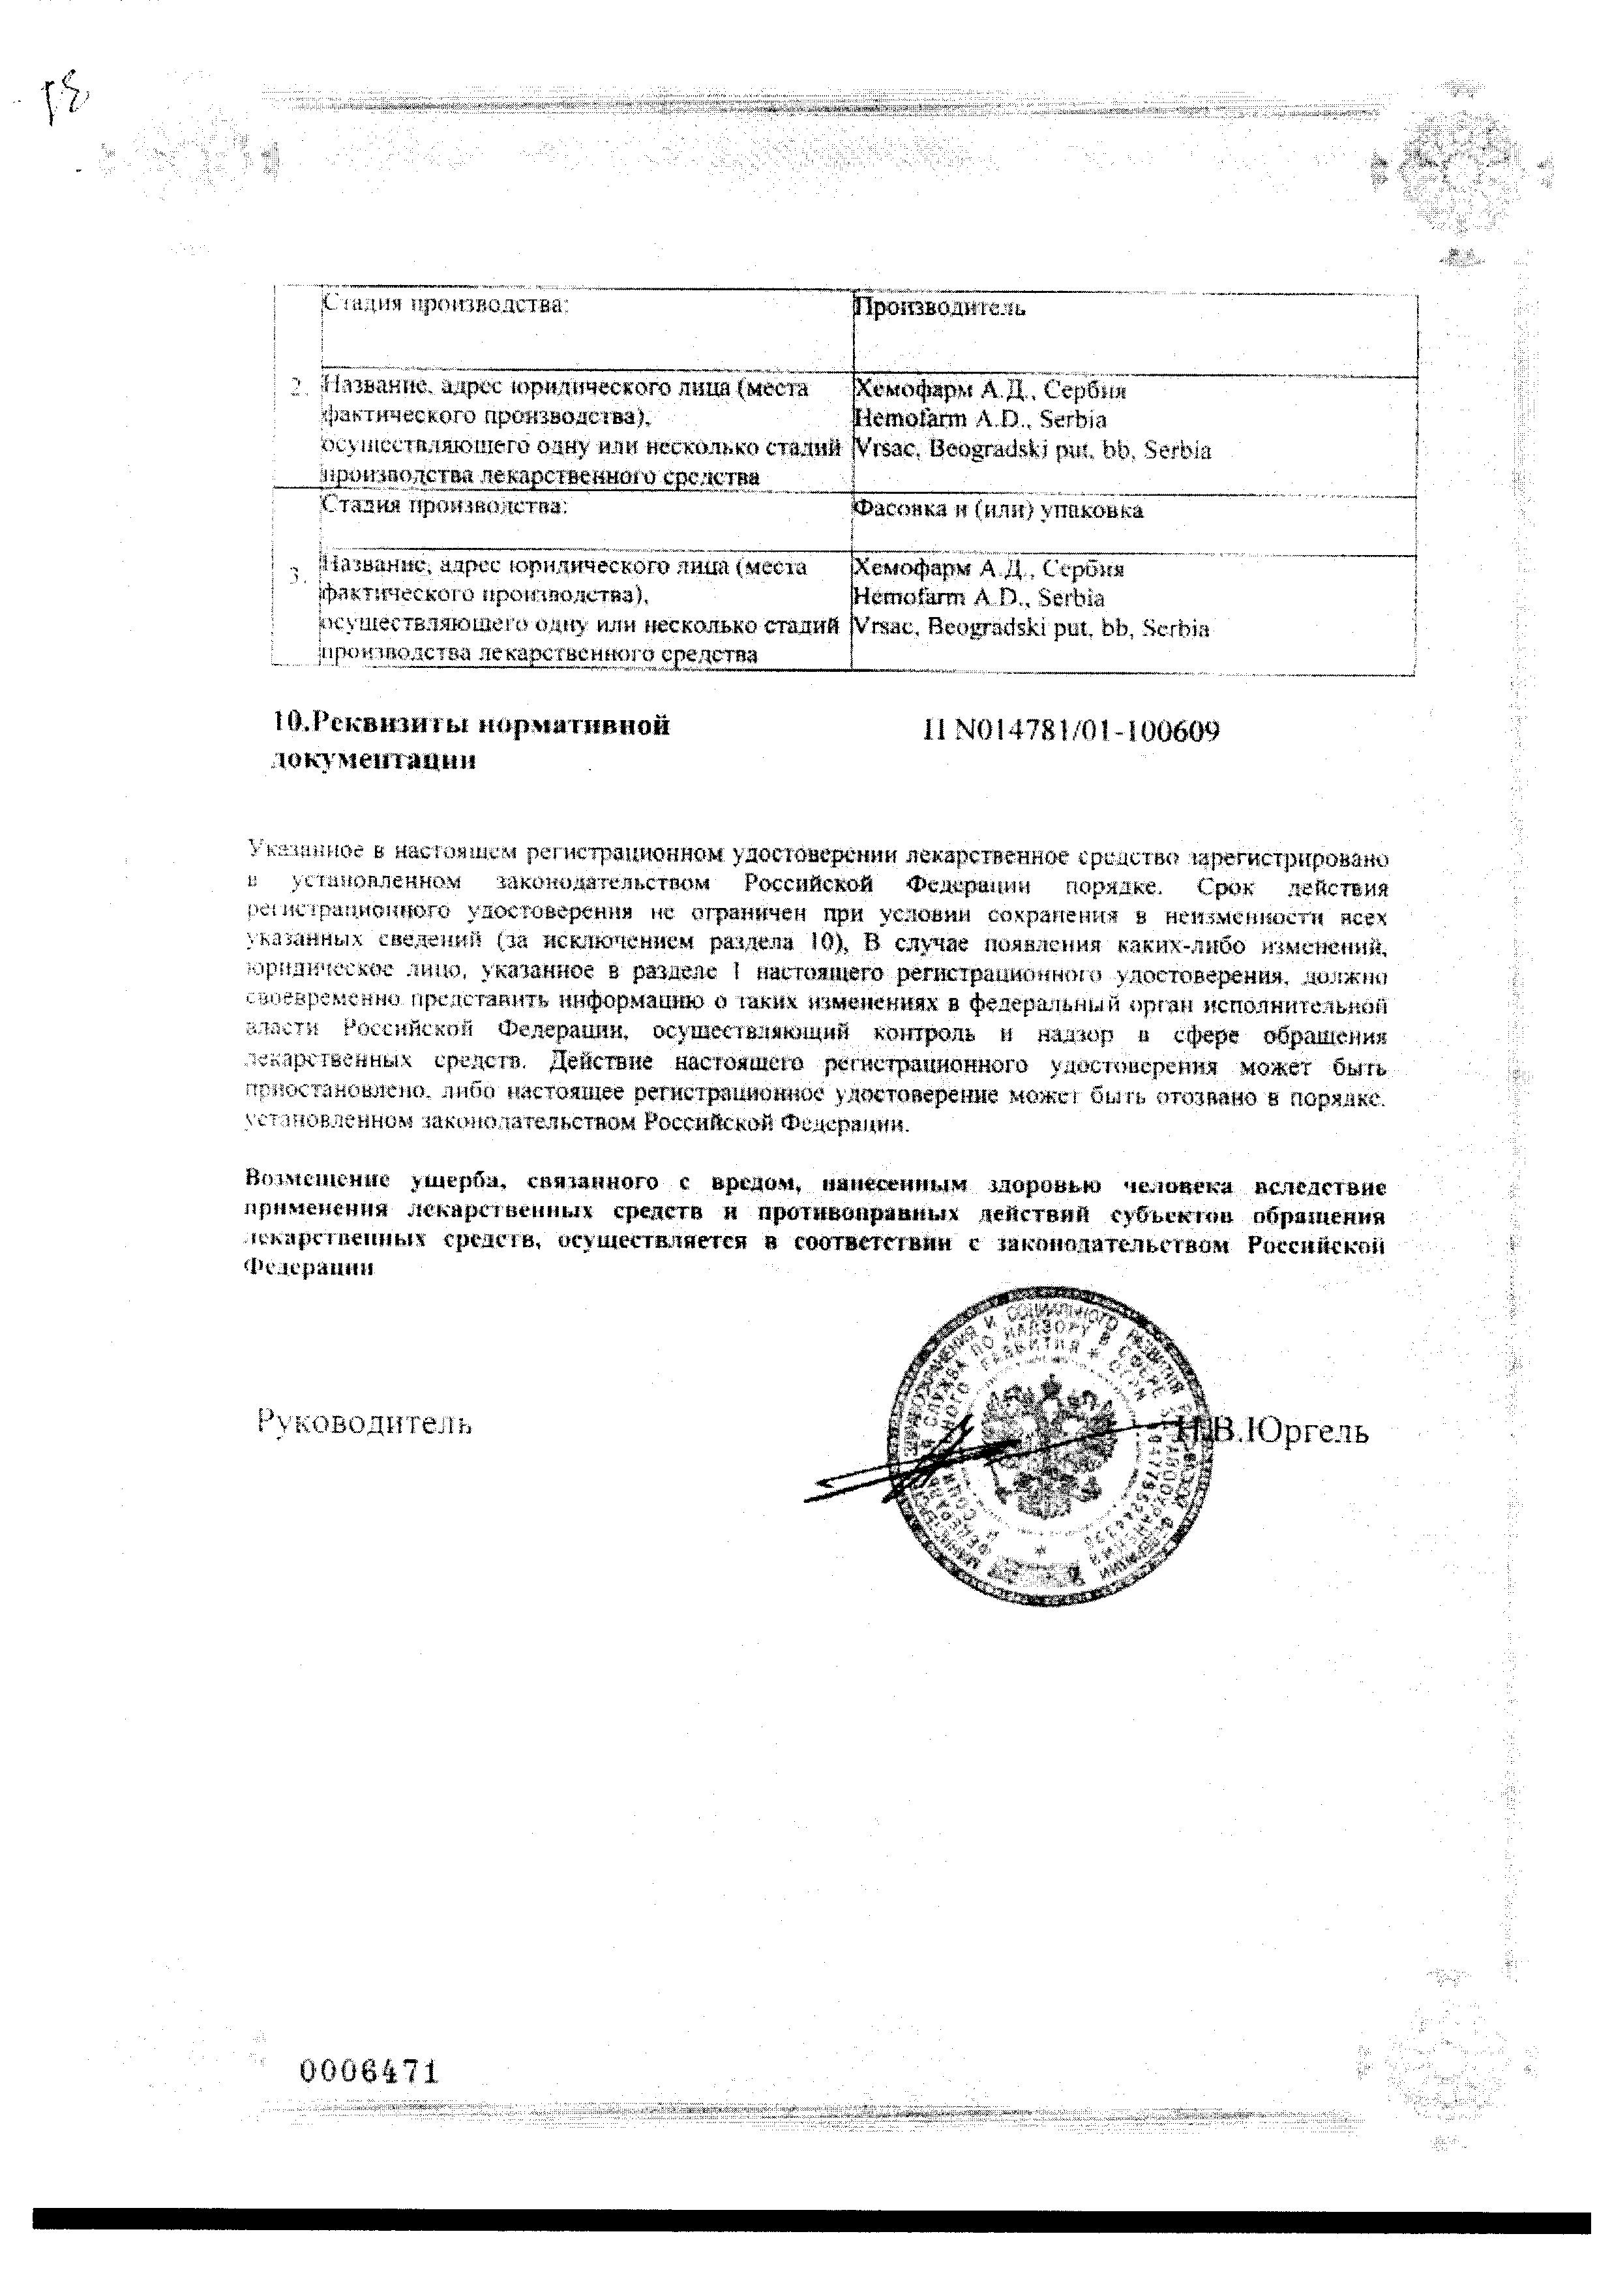 Клиндамицин сертификат